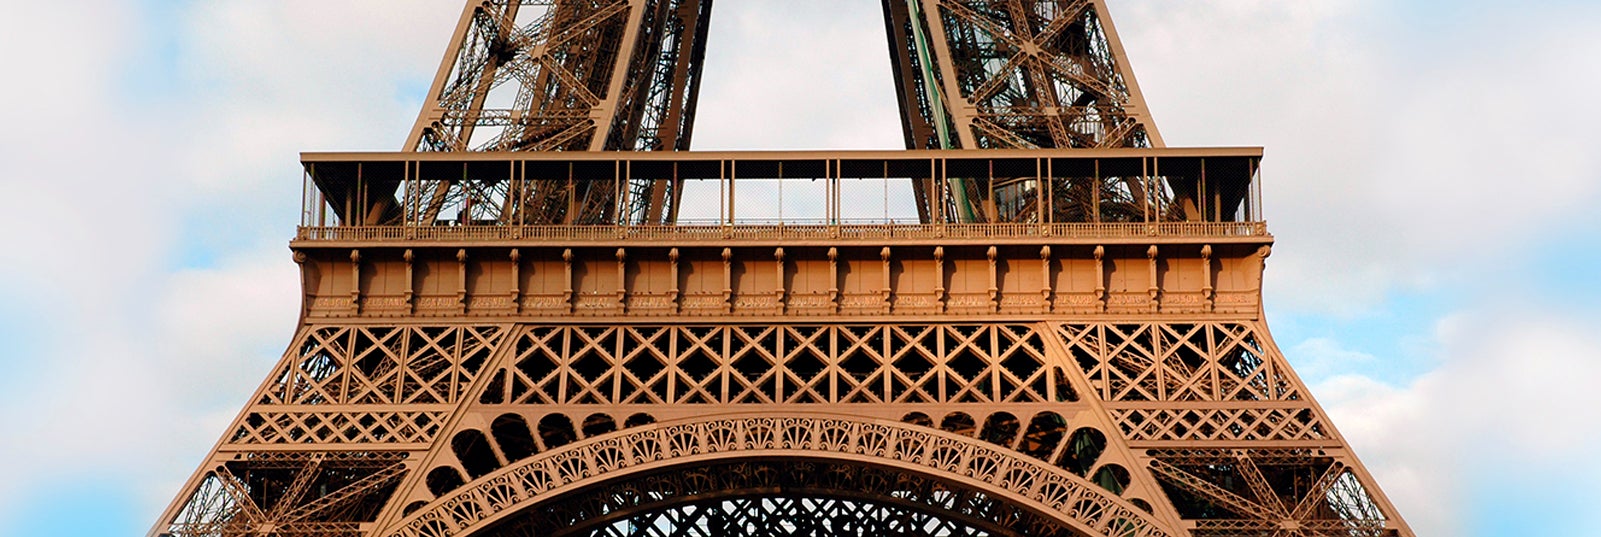 Torre Eiffel - Precio de las entradas, horario e historia